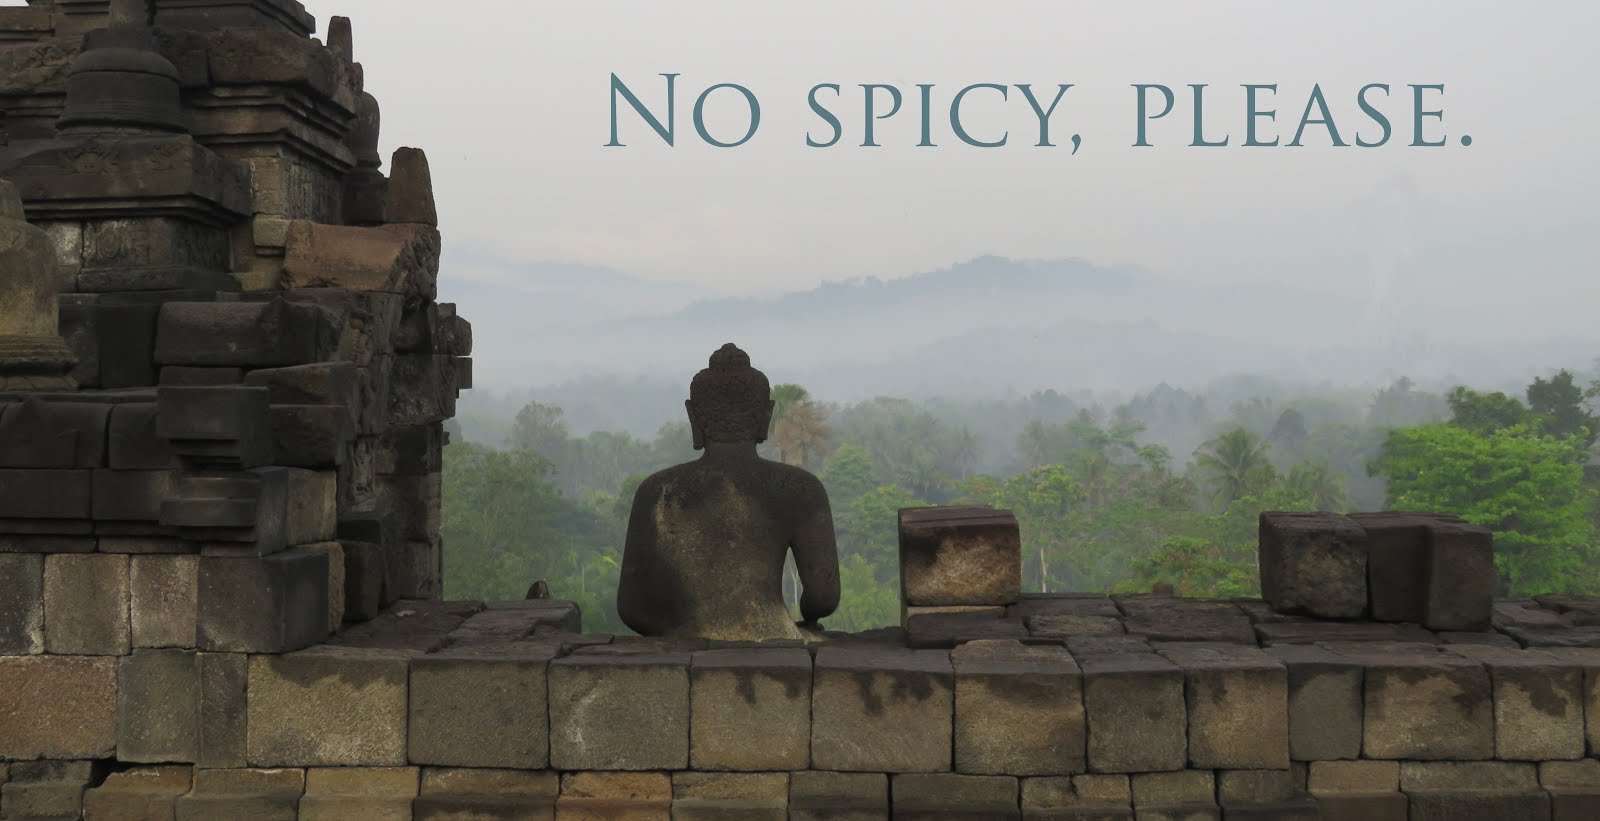 No spicy, please